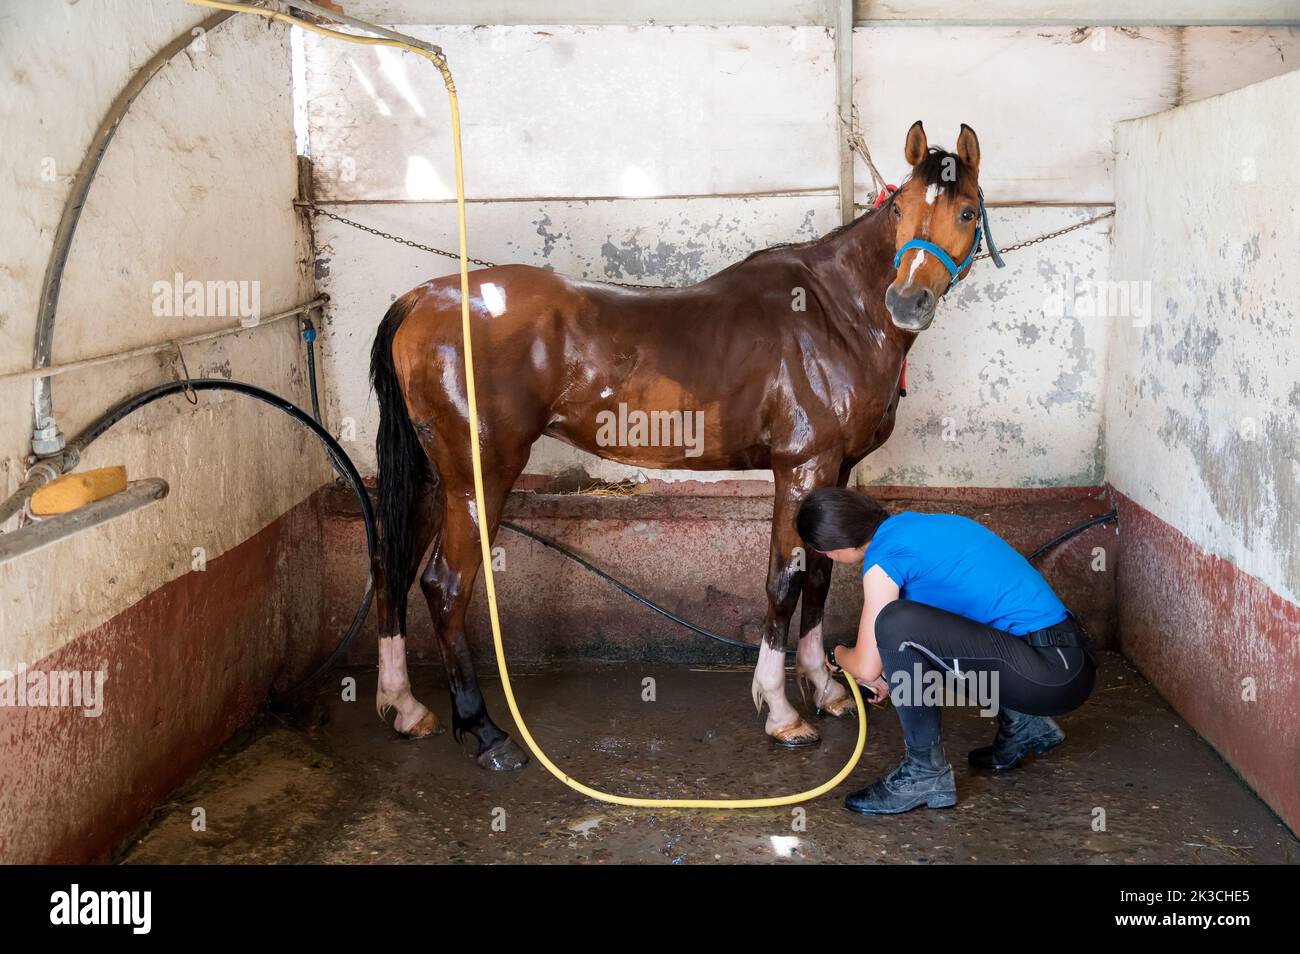 Ganzkörper-Seitenansicht der weiblichen Besitzerin, die während der Arbeit im Stall die Hufe des Pferdes mit braunem Mantel wäscht Stockfoto